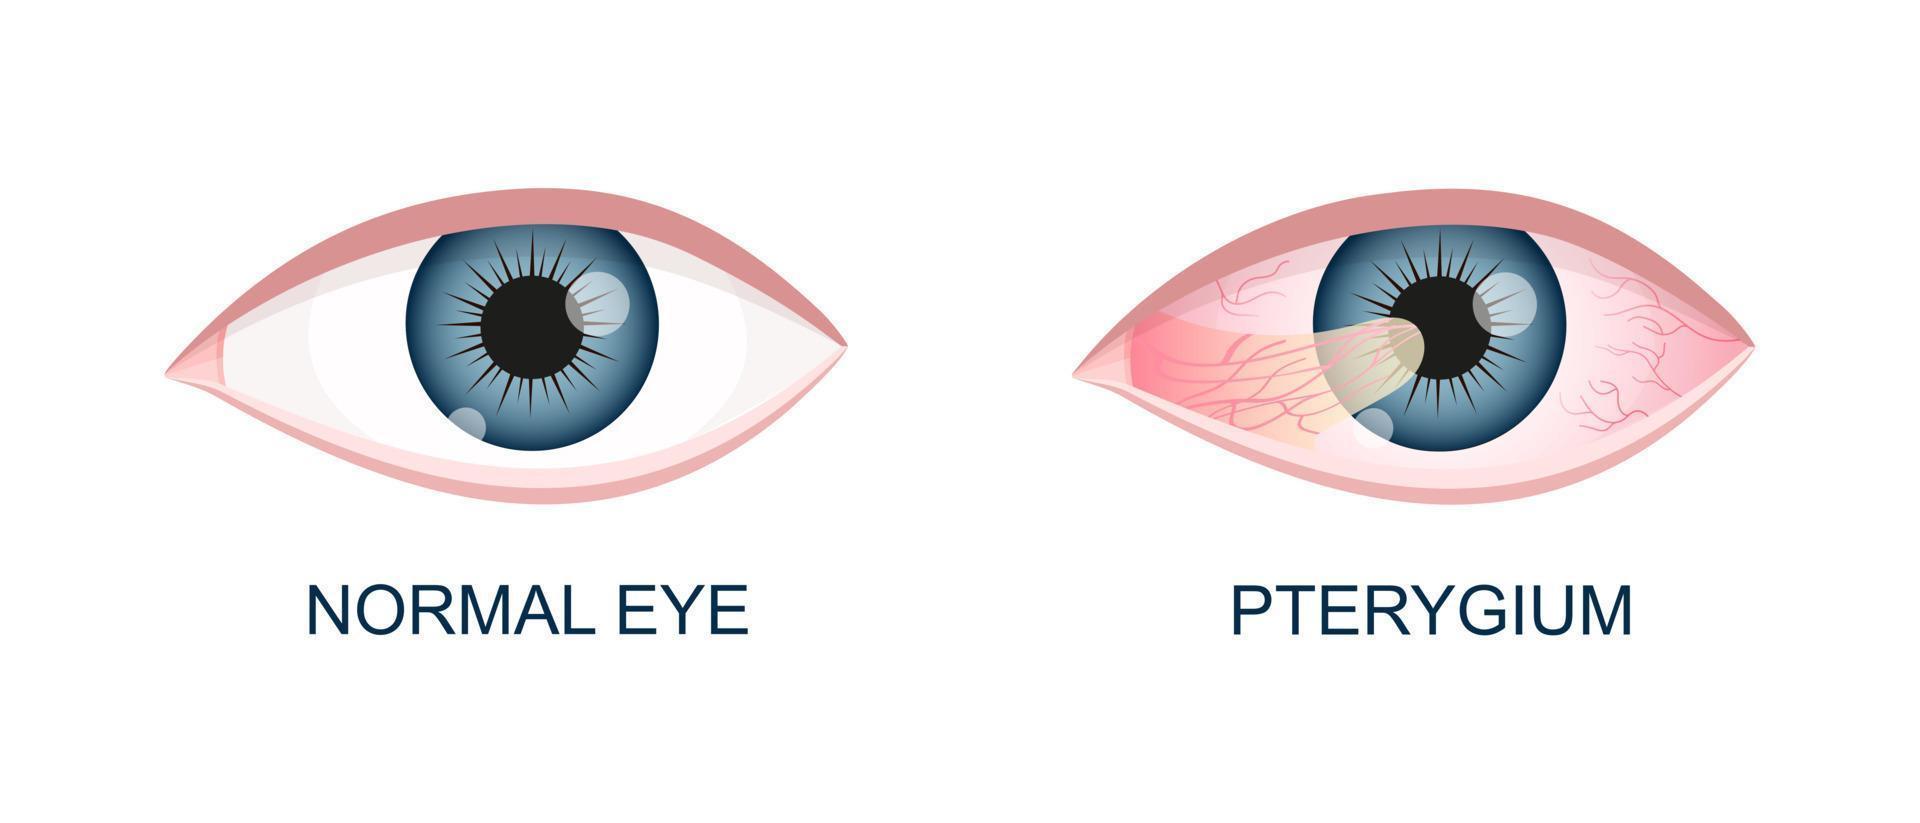 oog gezond en met pterygium. conjunctivaal degeneratie voordat en na chirurgie. oog ziekte. menselijk orgaan van visie met pathologie vector